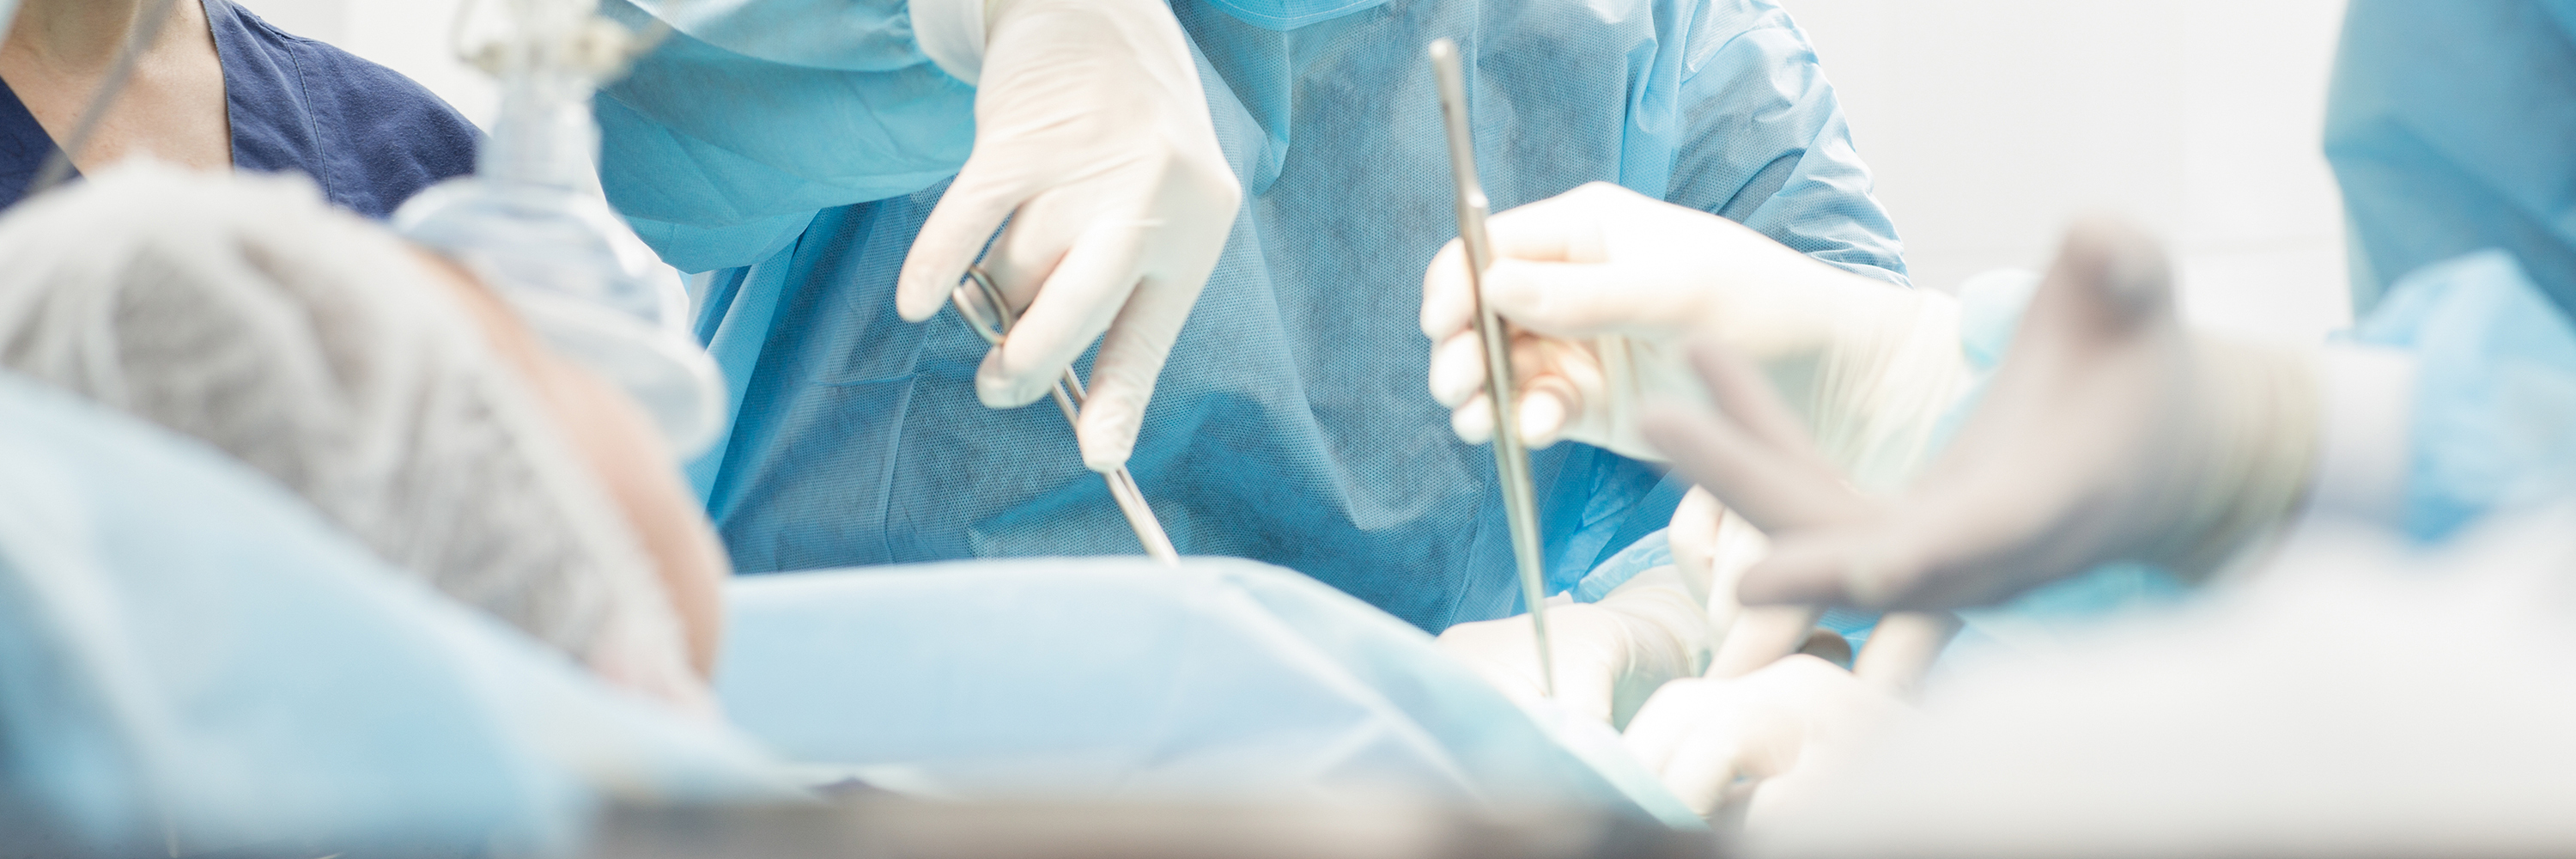 Истории о «черных трансплантологах» — нелепая выдумка?